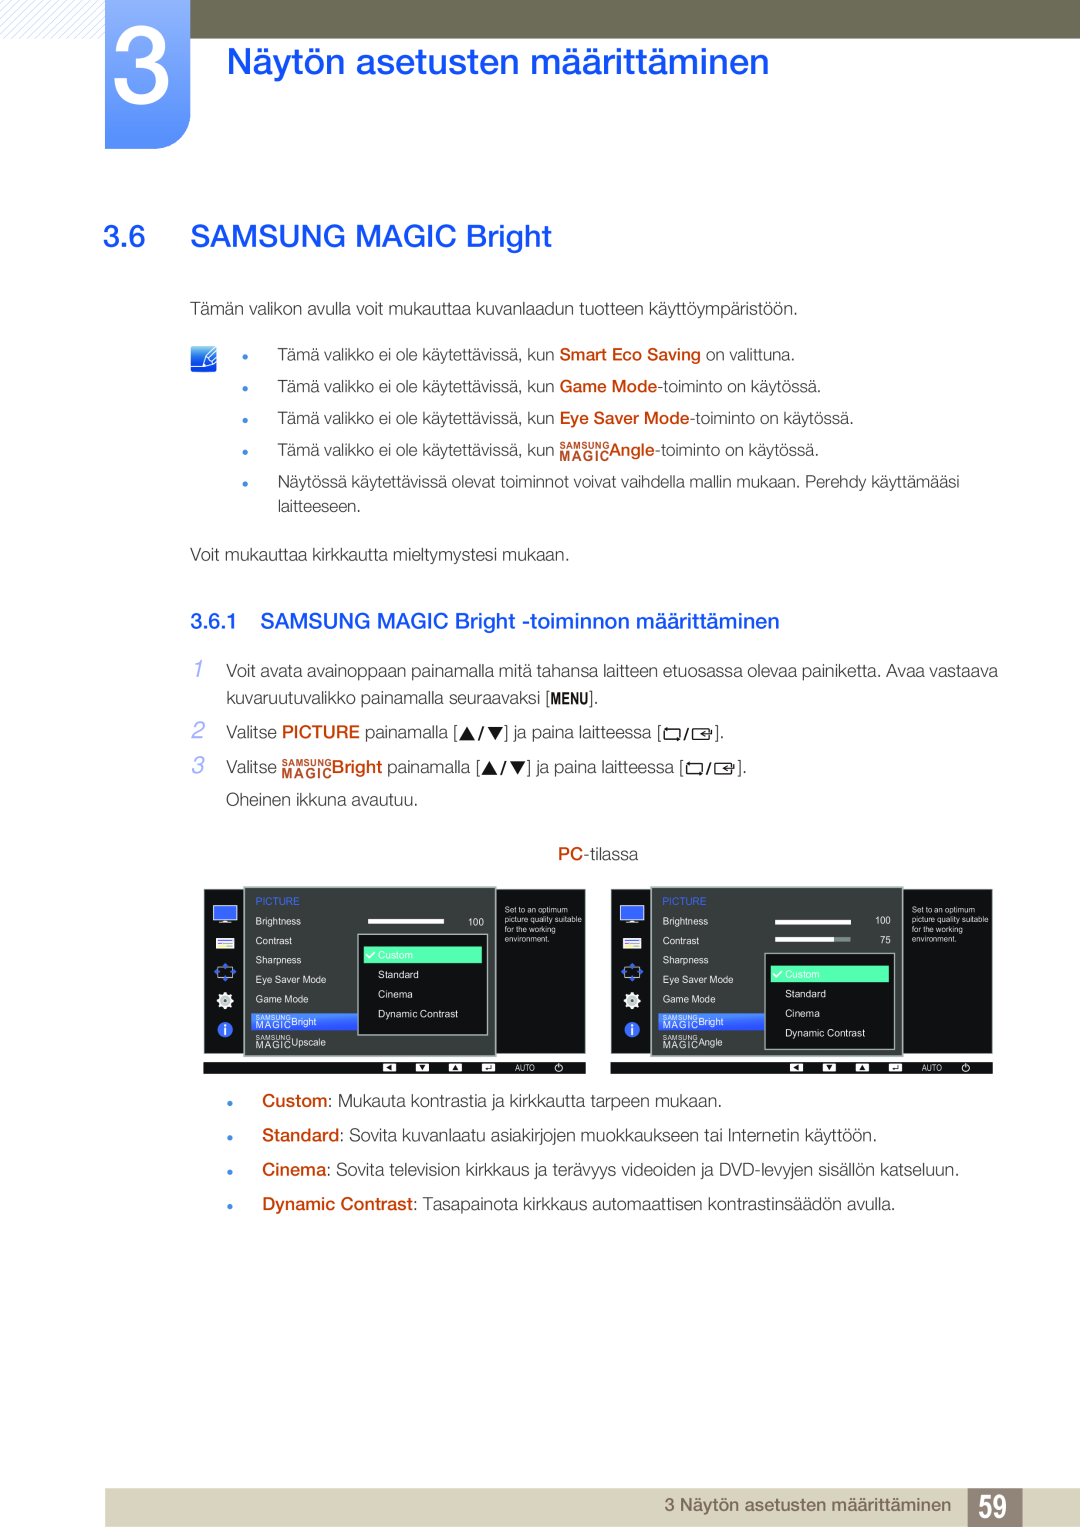 Samsung LS24E65KBWV/EN, LS23E65UDC/EN SAMSUNG MAGIC Bright -toiminnon määrittäminen, 3 Näytön asetusten määrittäminen 